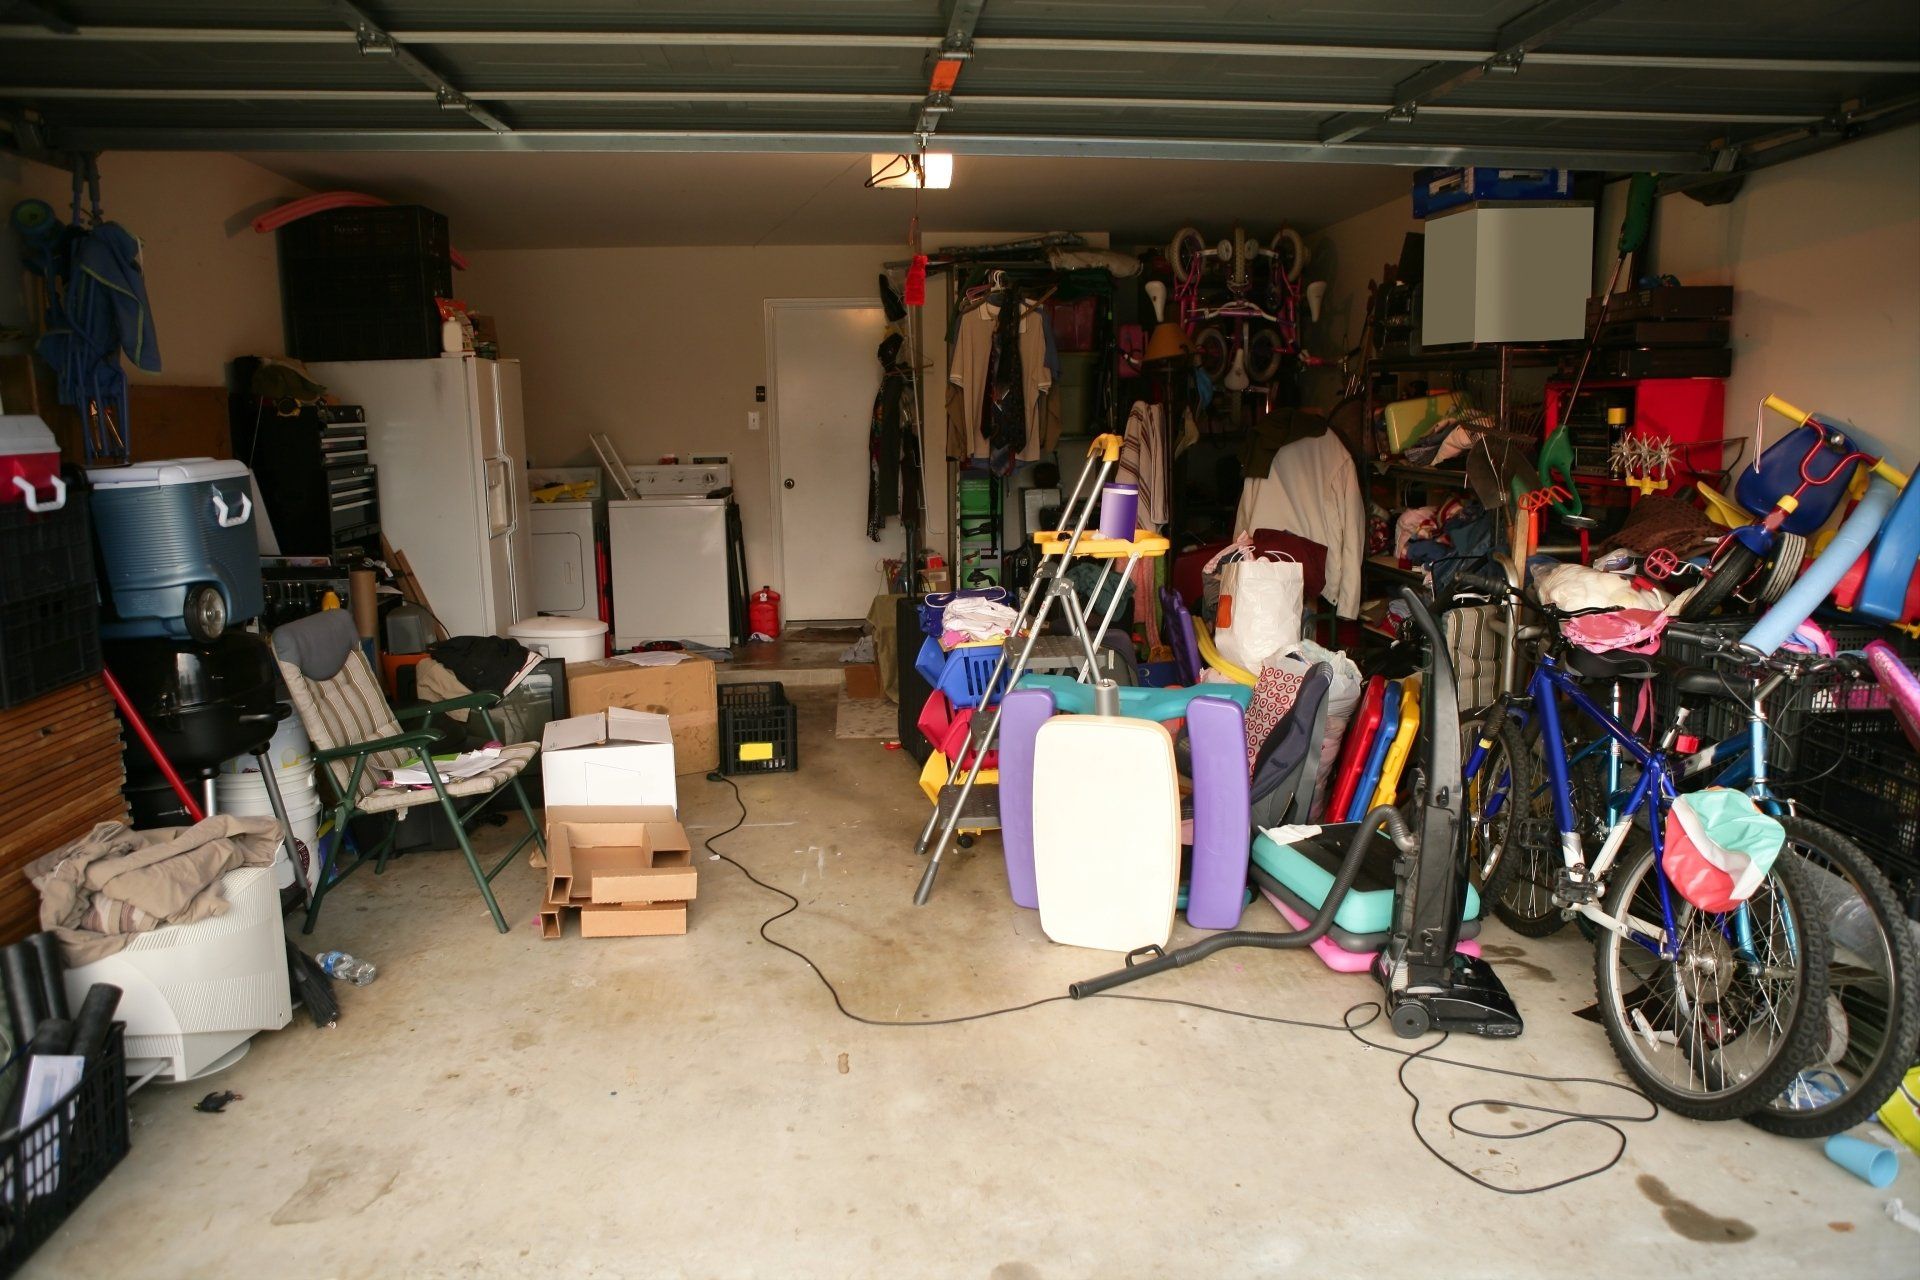 appliances in the garage